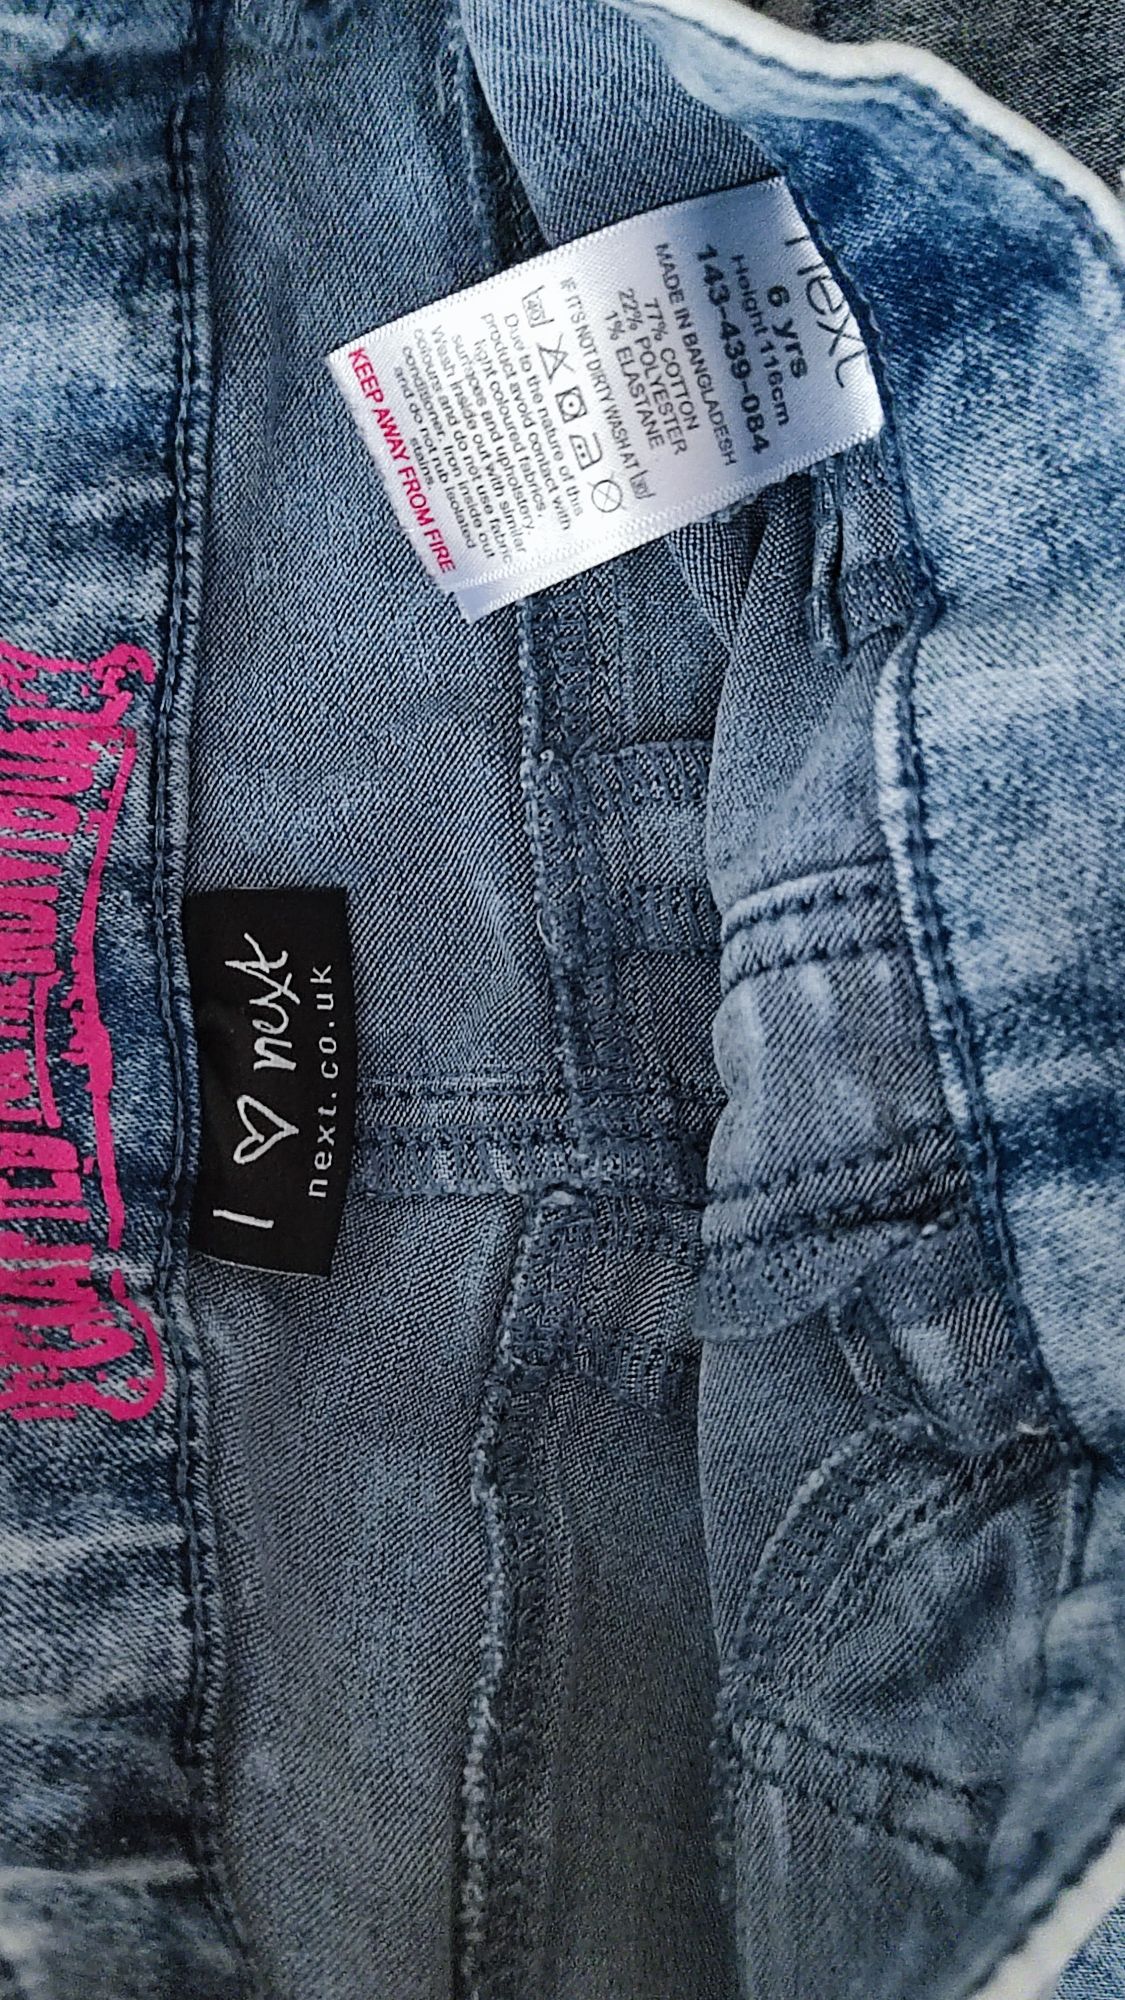 Spodnie jeans Next r.116 dziewczynka